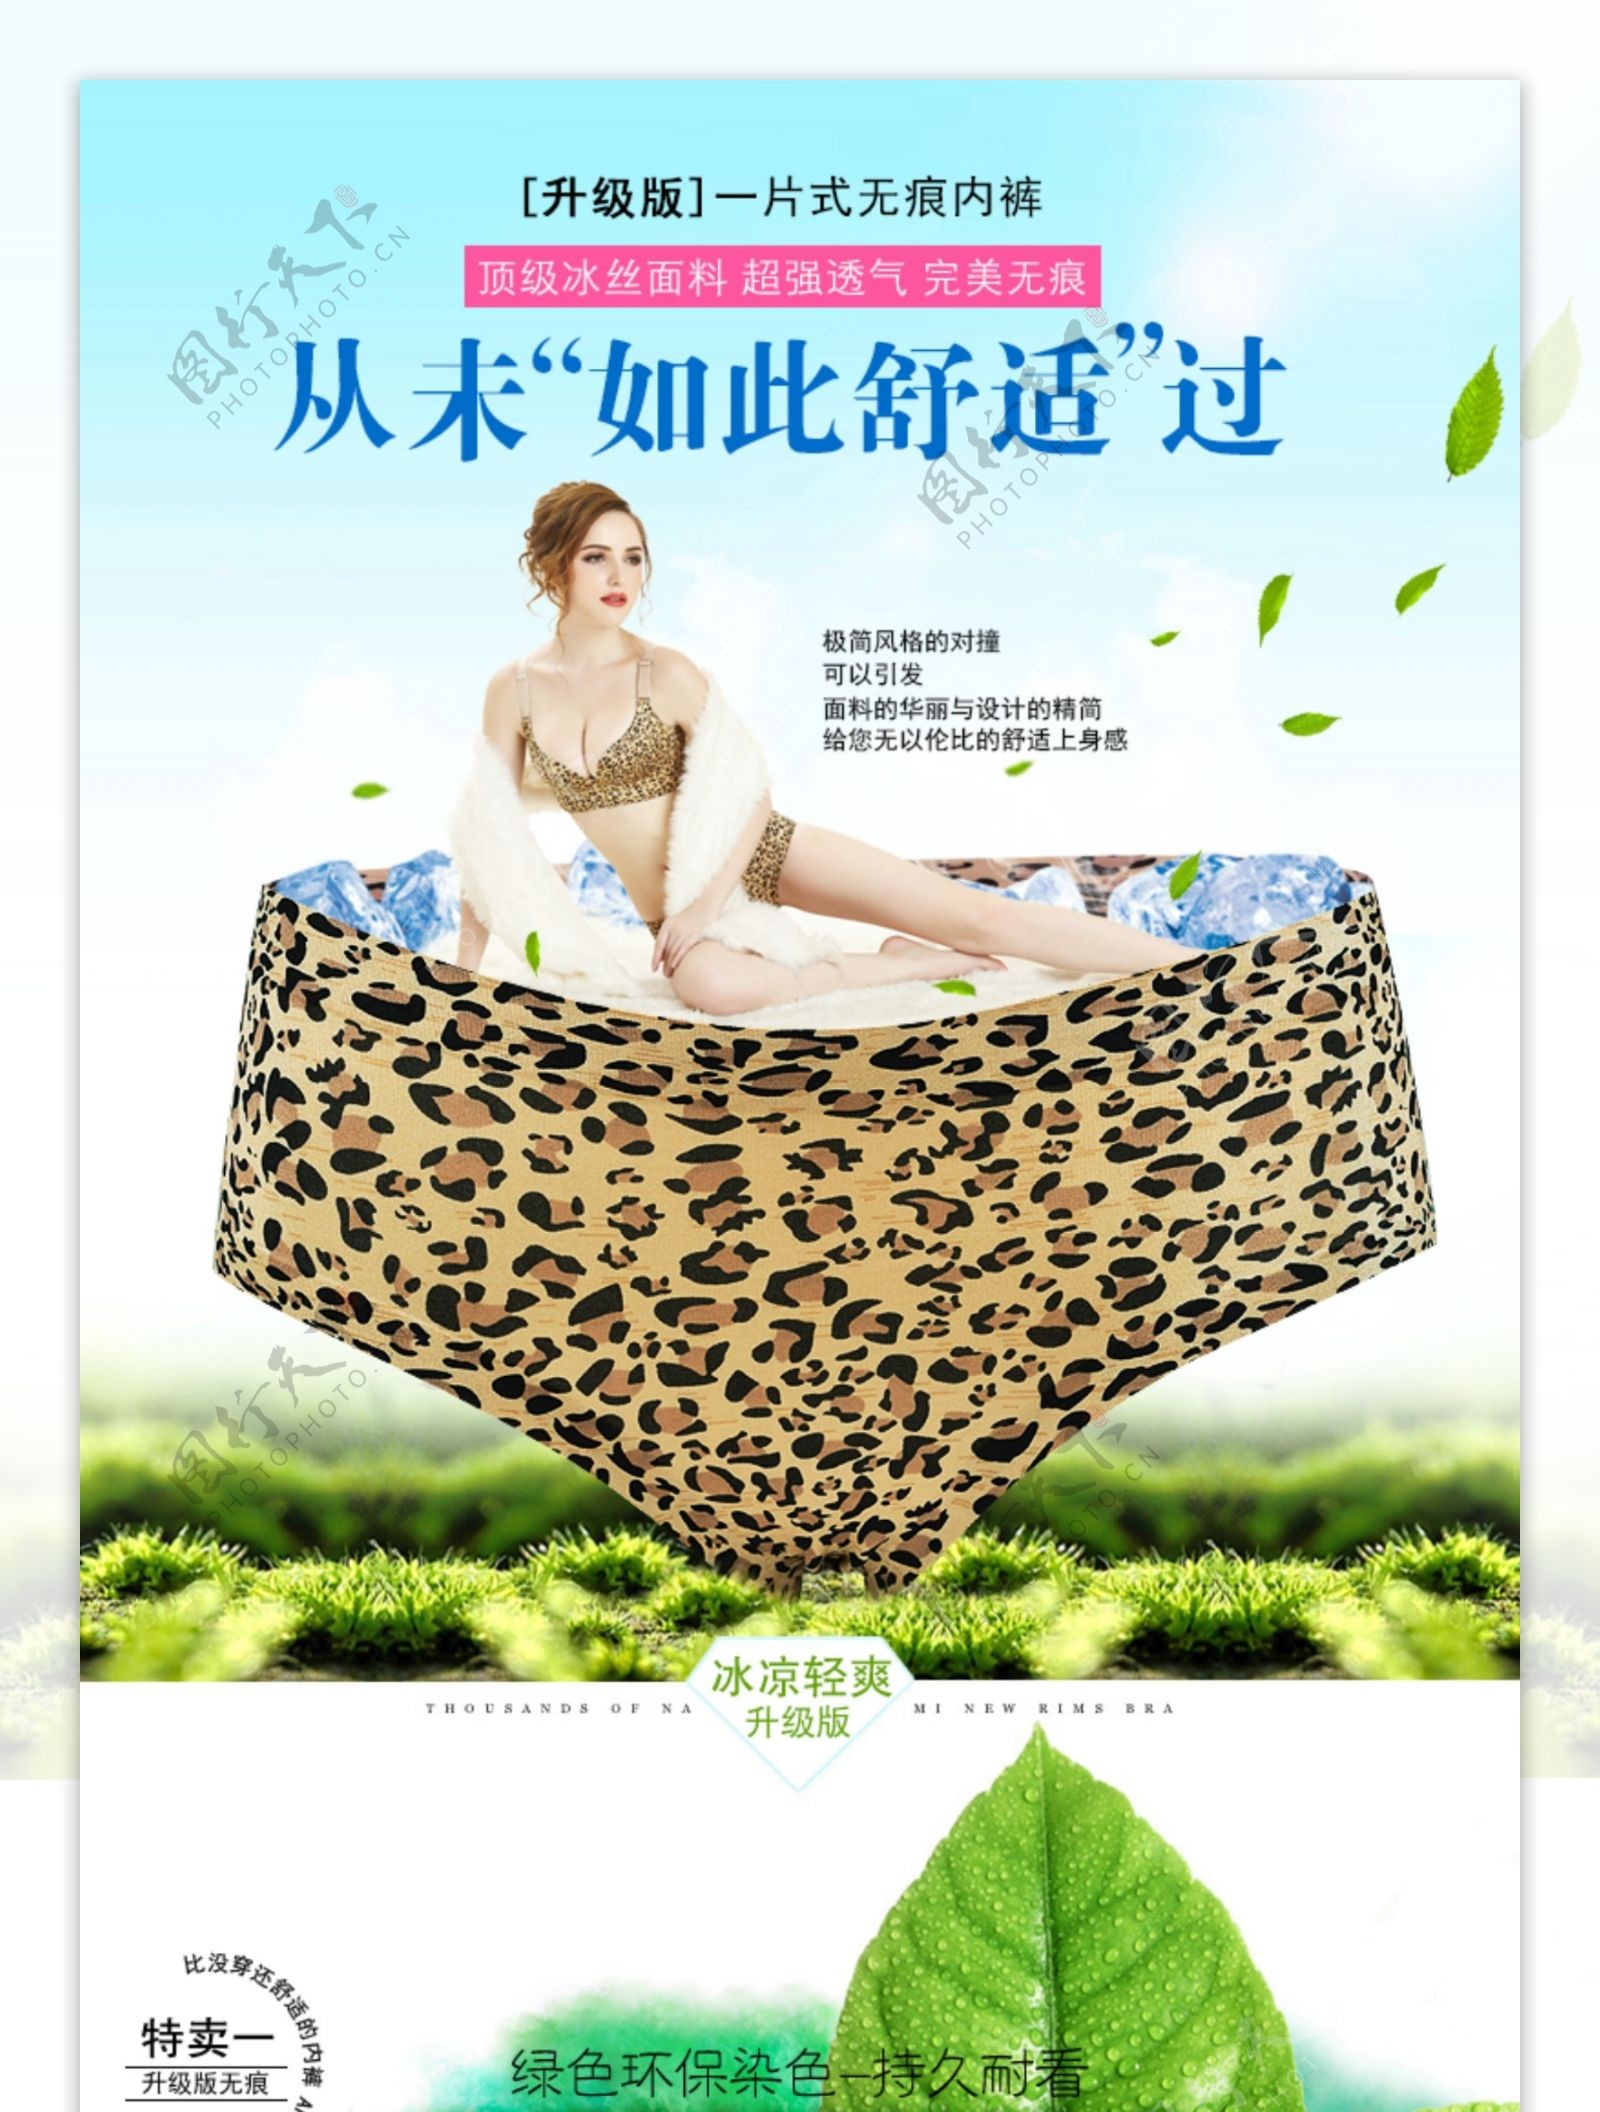 天猫淘宝女士文胸内裤详情促销主图设计海报